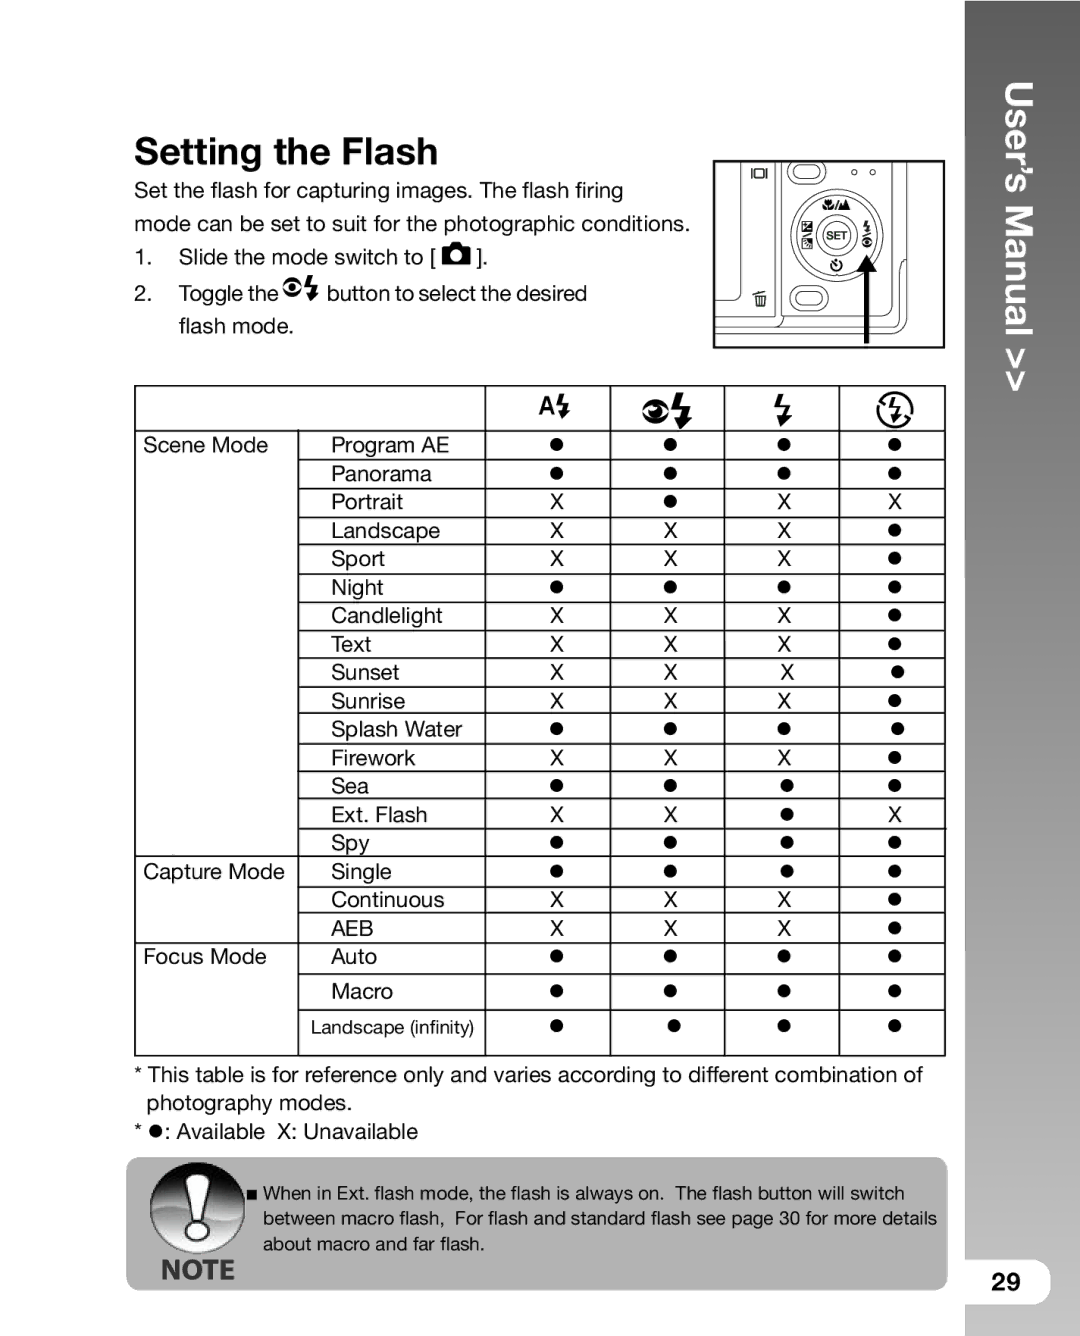 Sealife DC 600 manual Setting the Flash, Aeb 